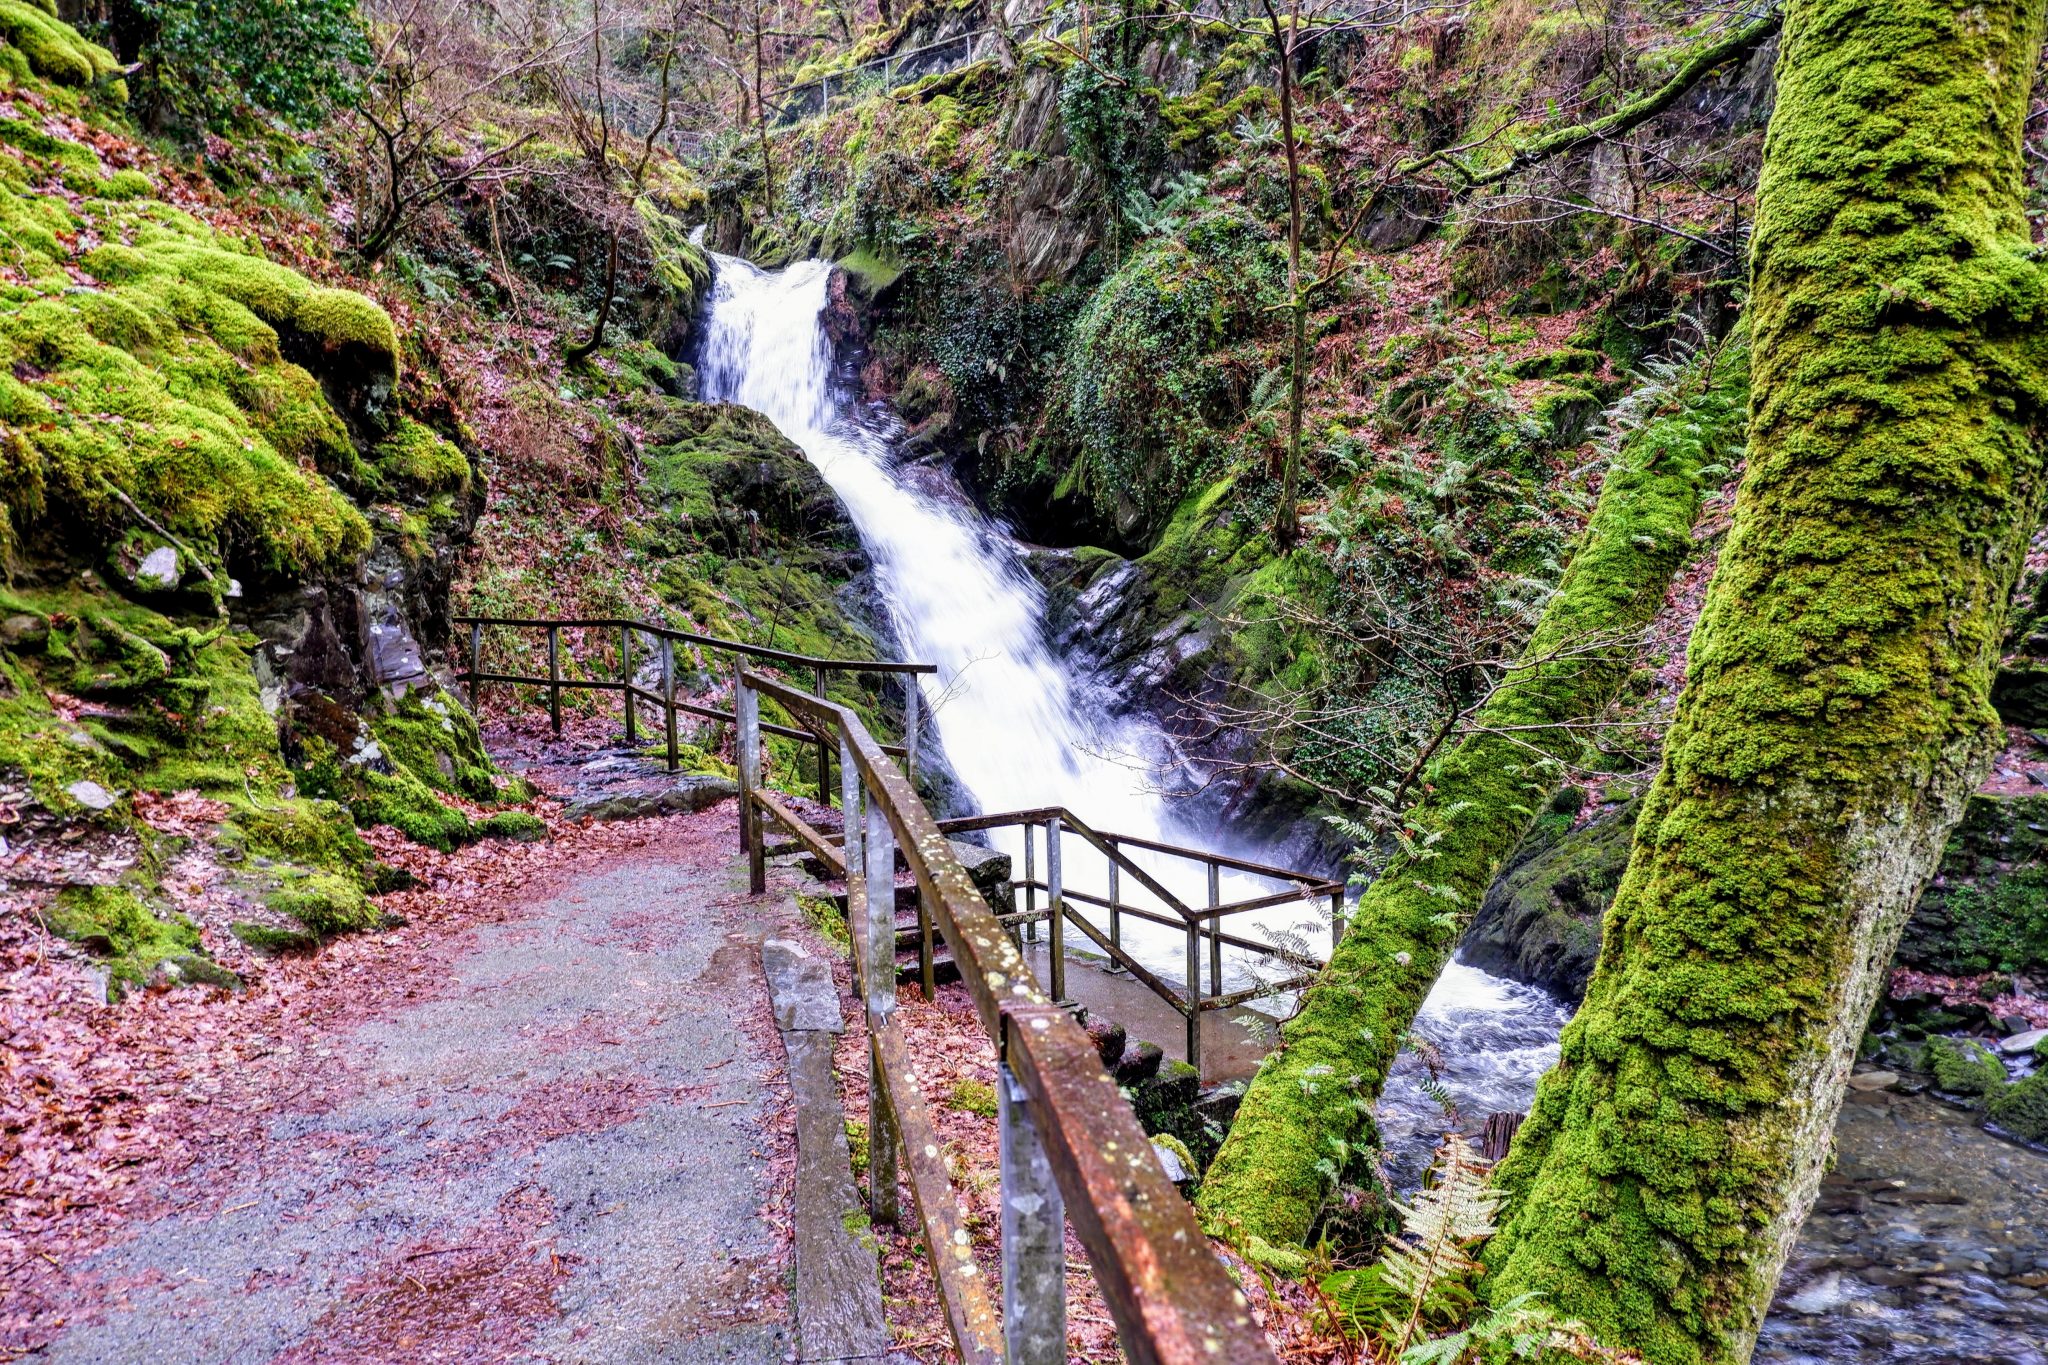 Dolgoch Waterfalls, Bryncrug, Wales